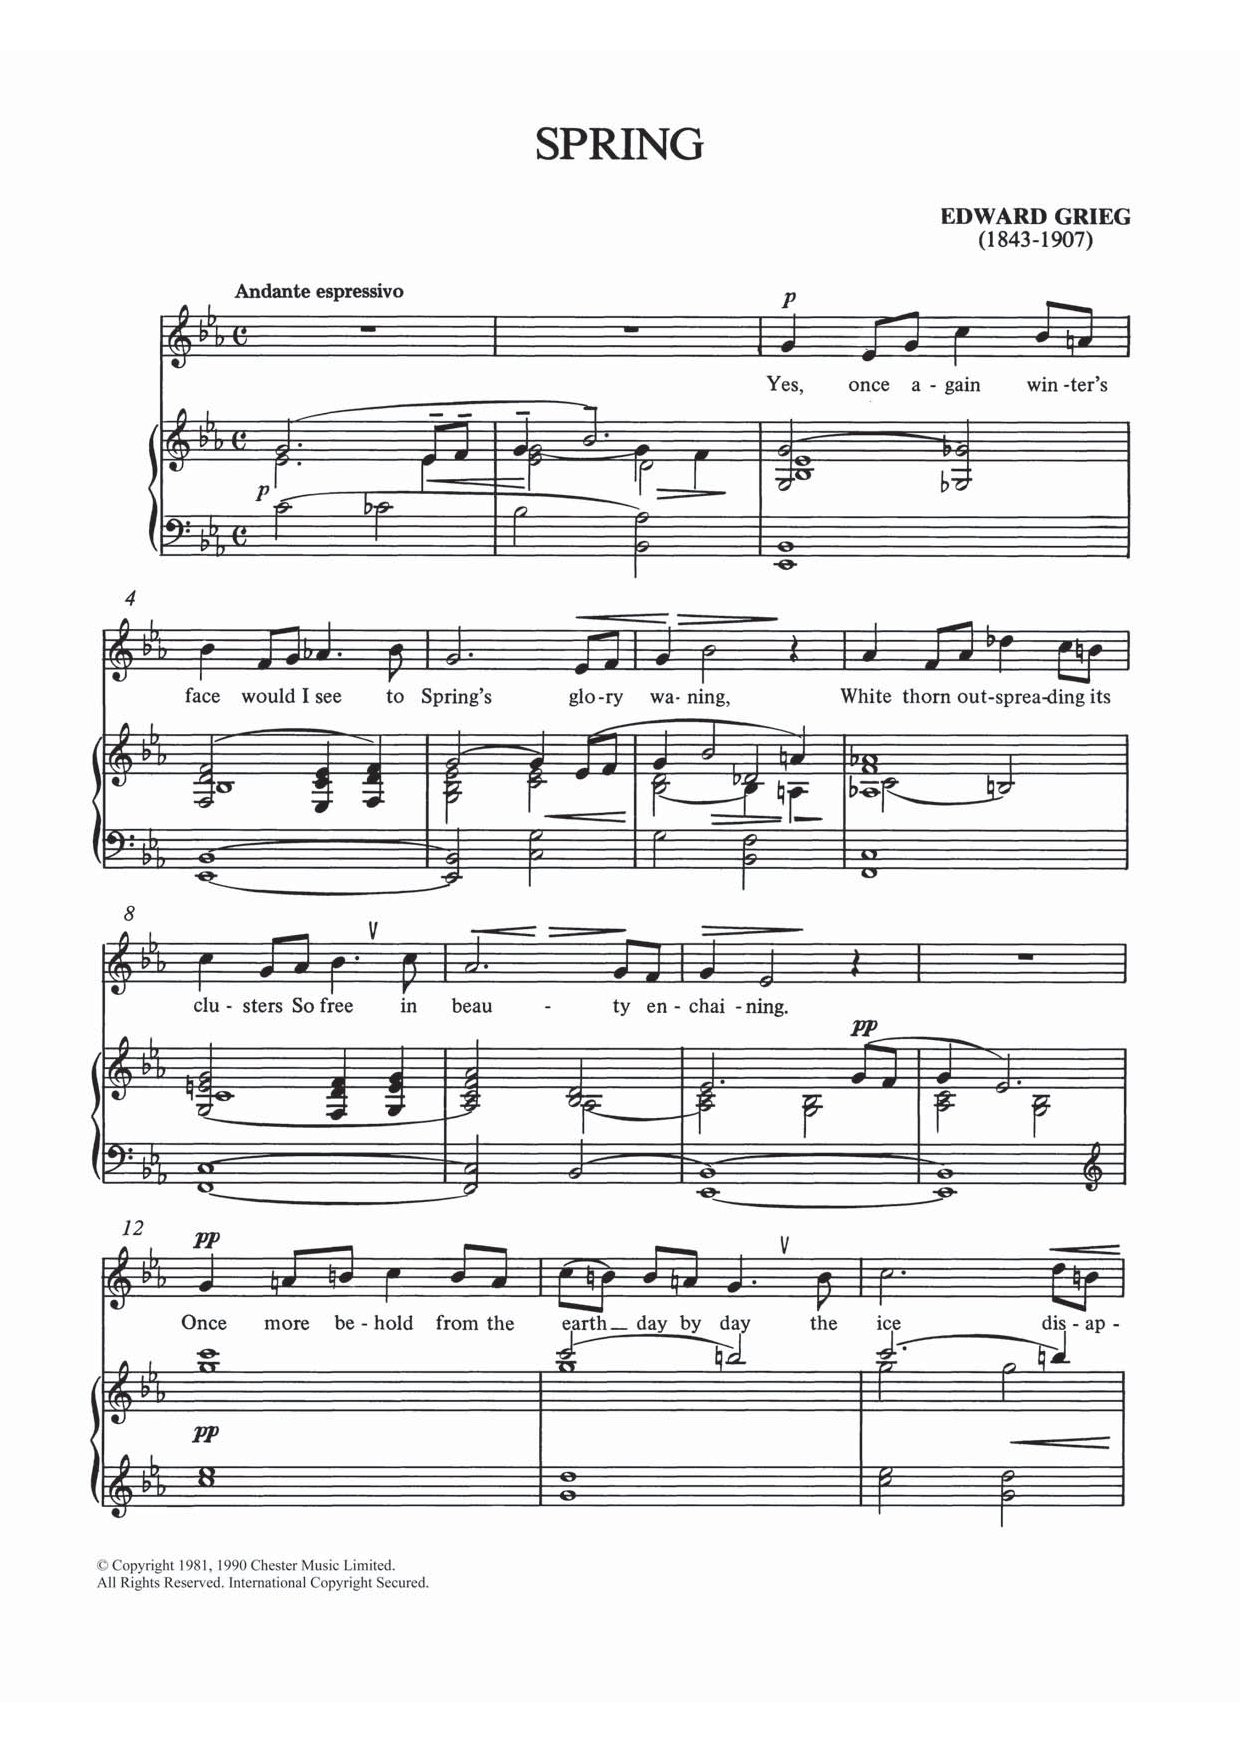 Download Edvard Grieg Spring Sheet Music